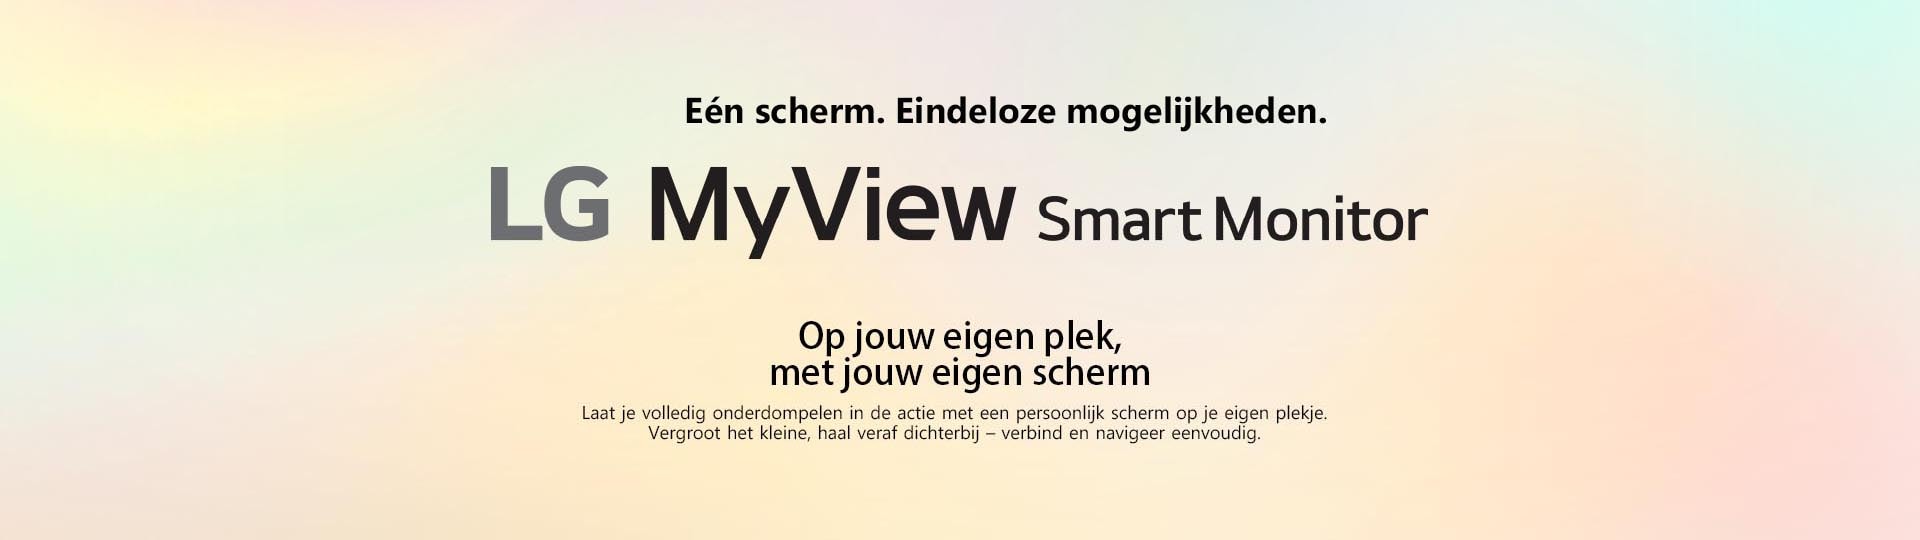 LG MyView Smart Monitor - Op jouw eigen plek, met jouw eigen scherm.	